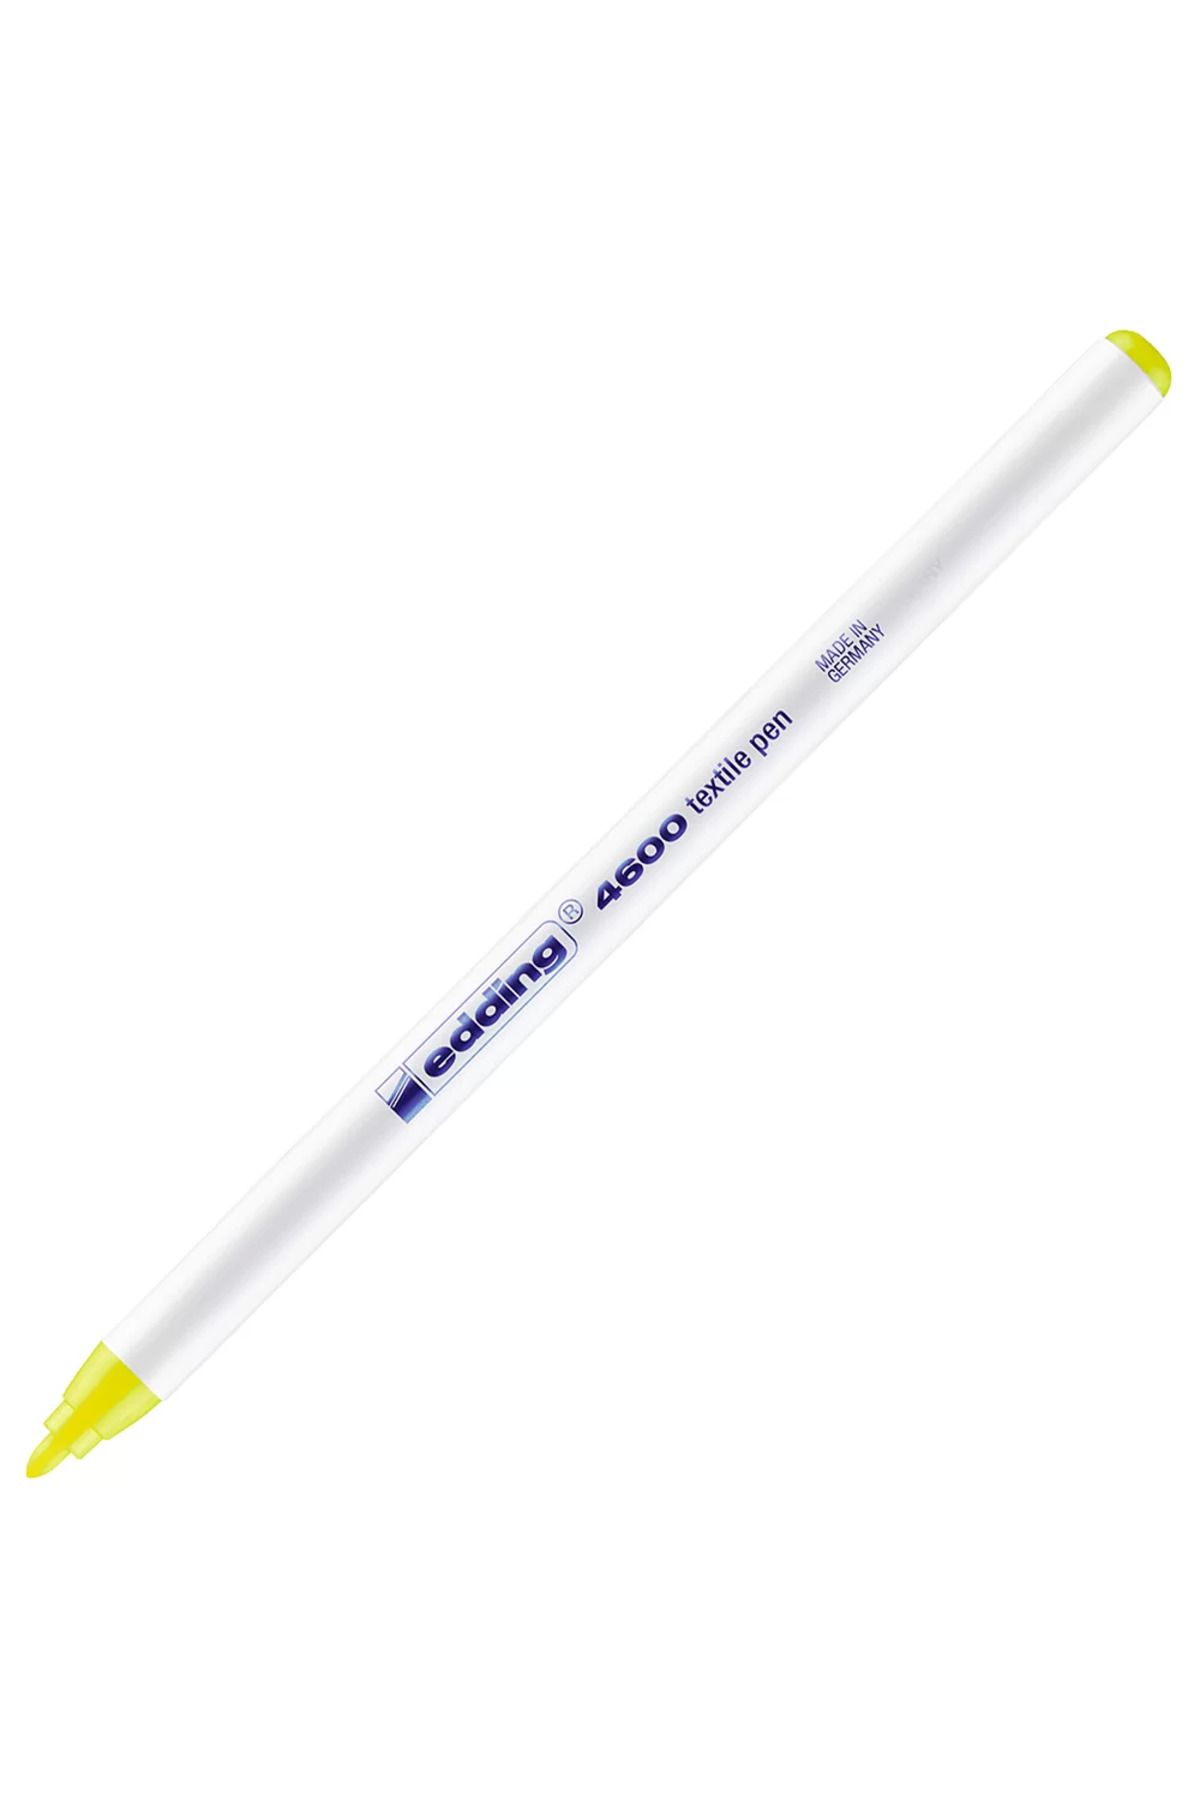 Edding Eddıng T-Shırt Kalemı Fosforlu Sarı (E-4600)